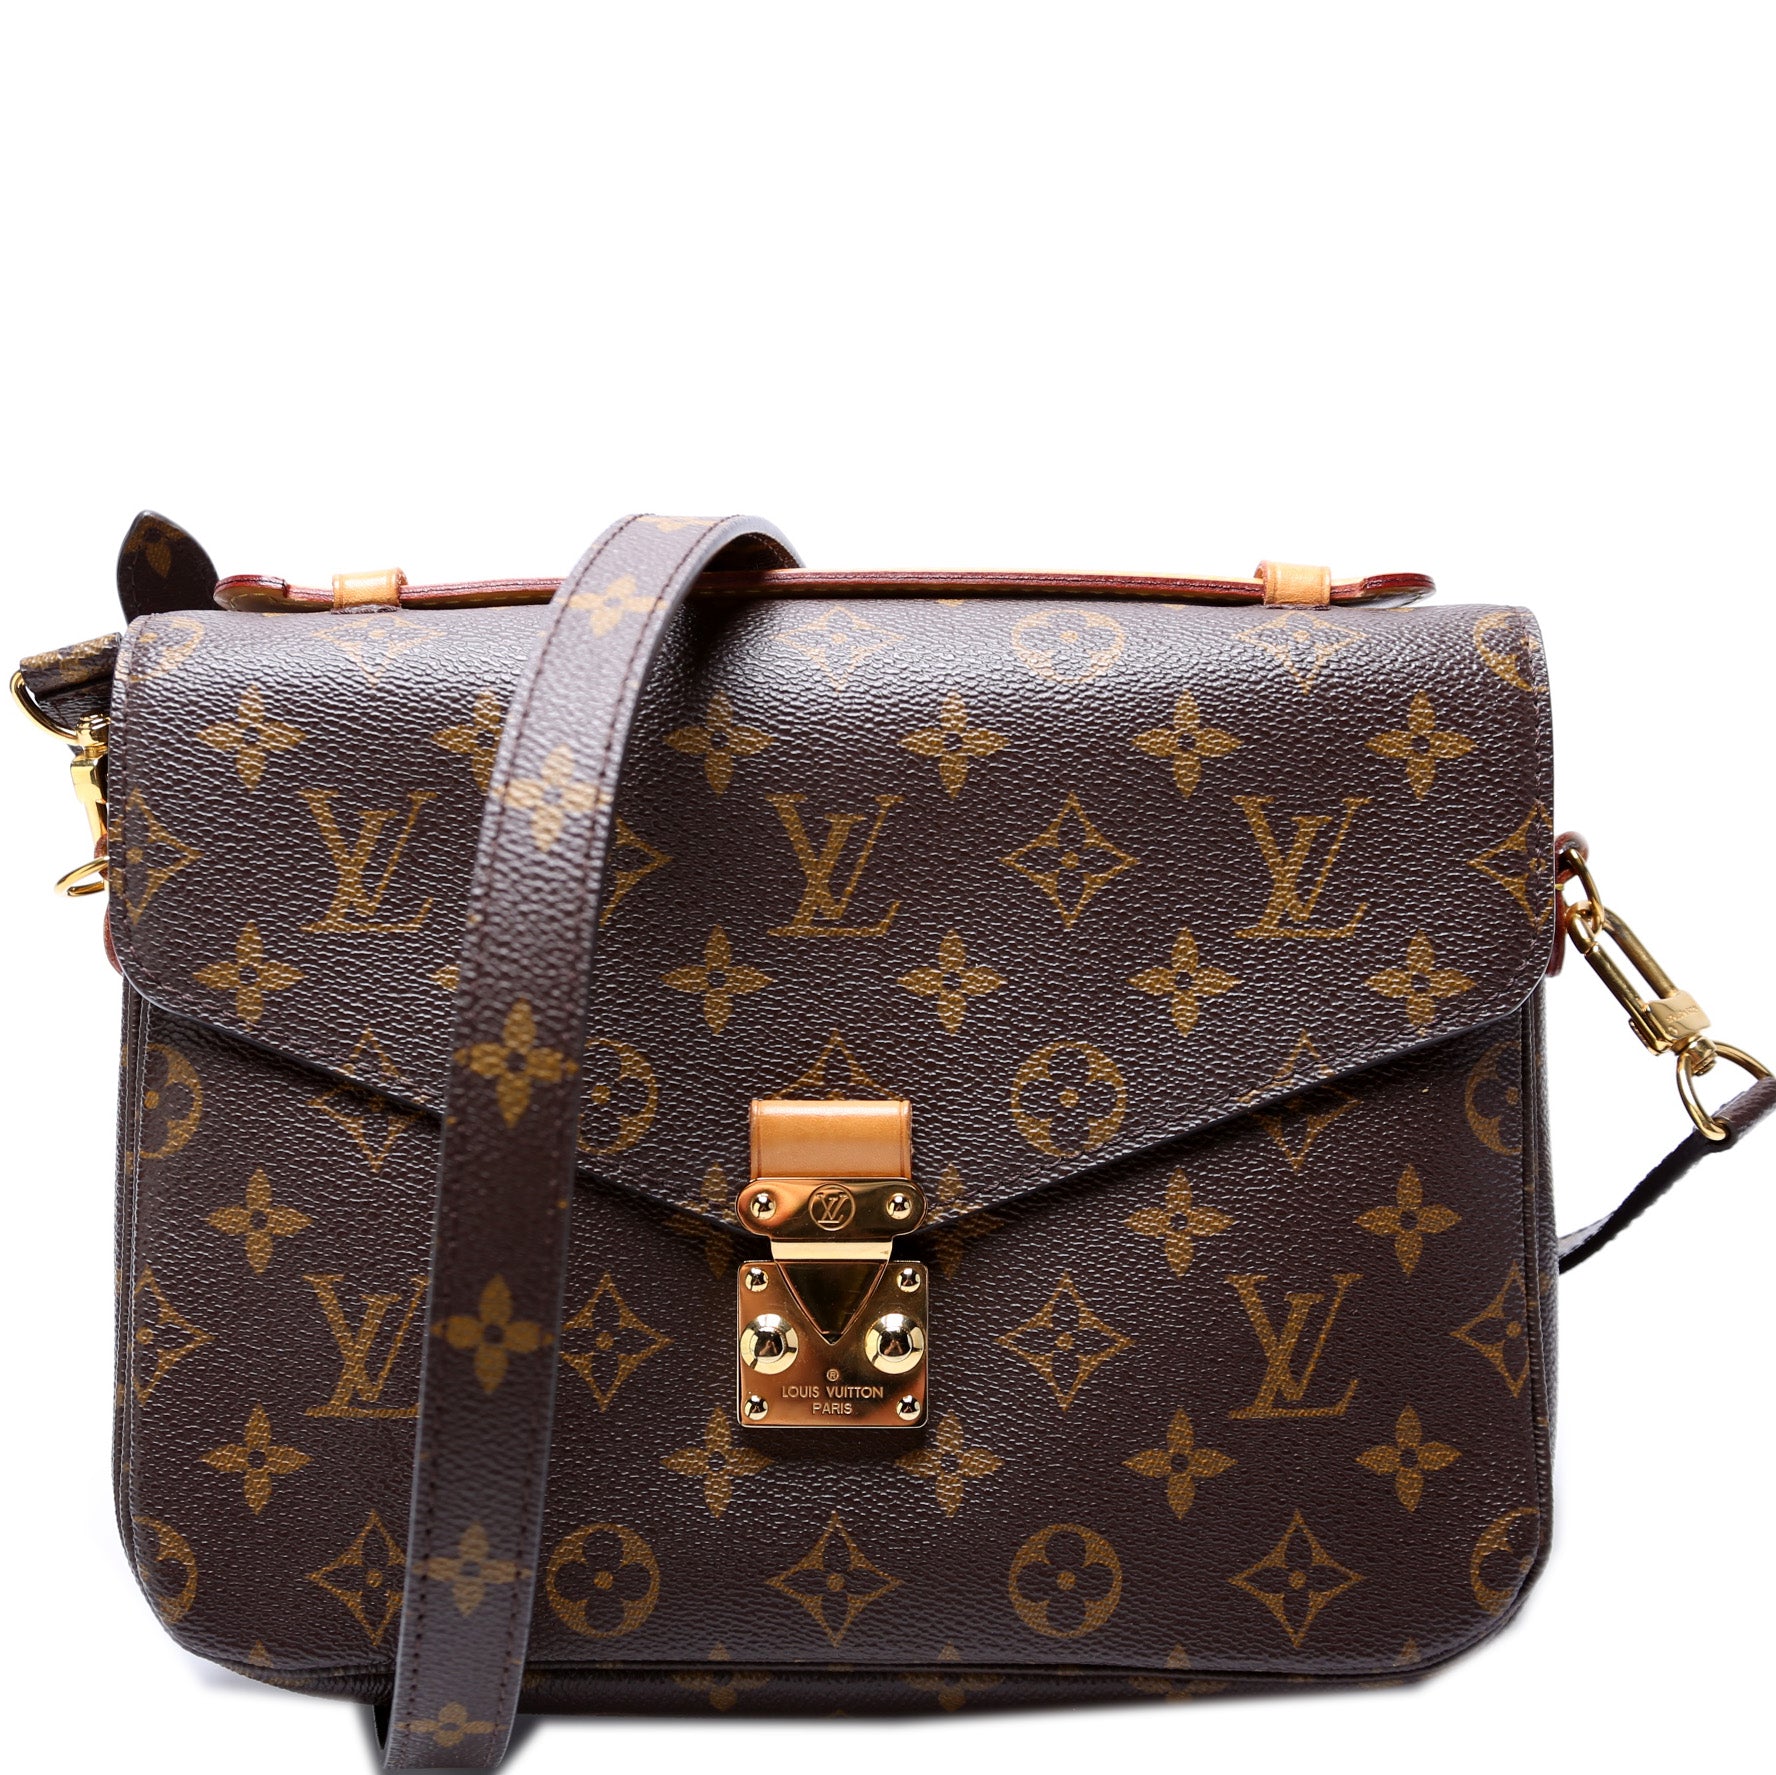 Louis Vuitton Metis Monogram M40781  Bags, Handbags michael kors, Handbag